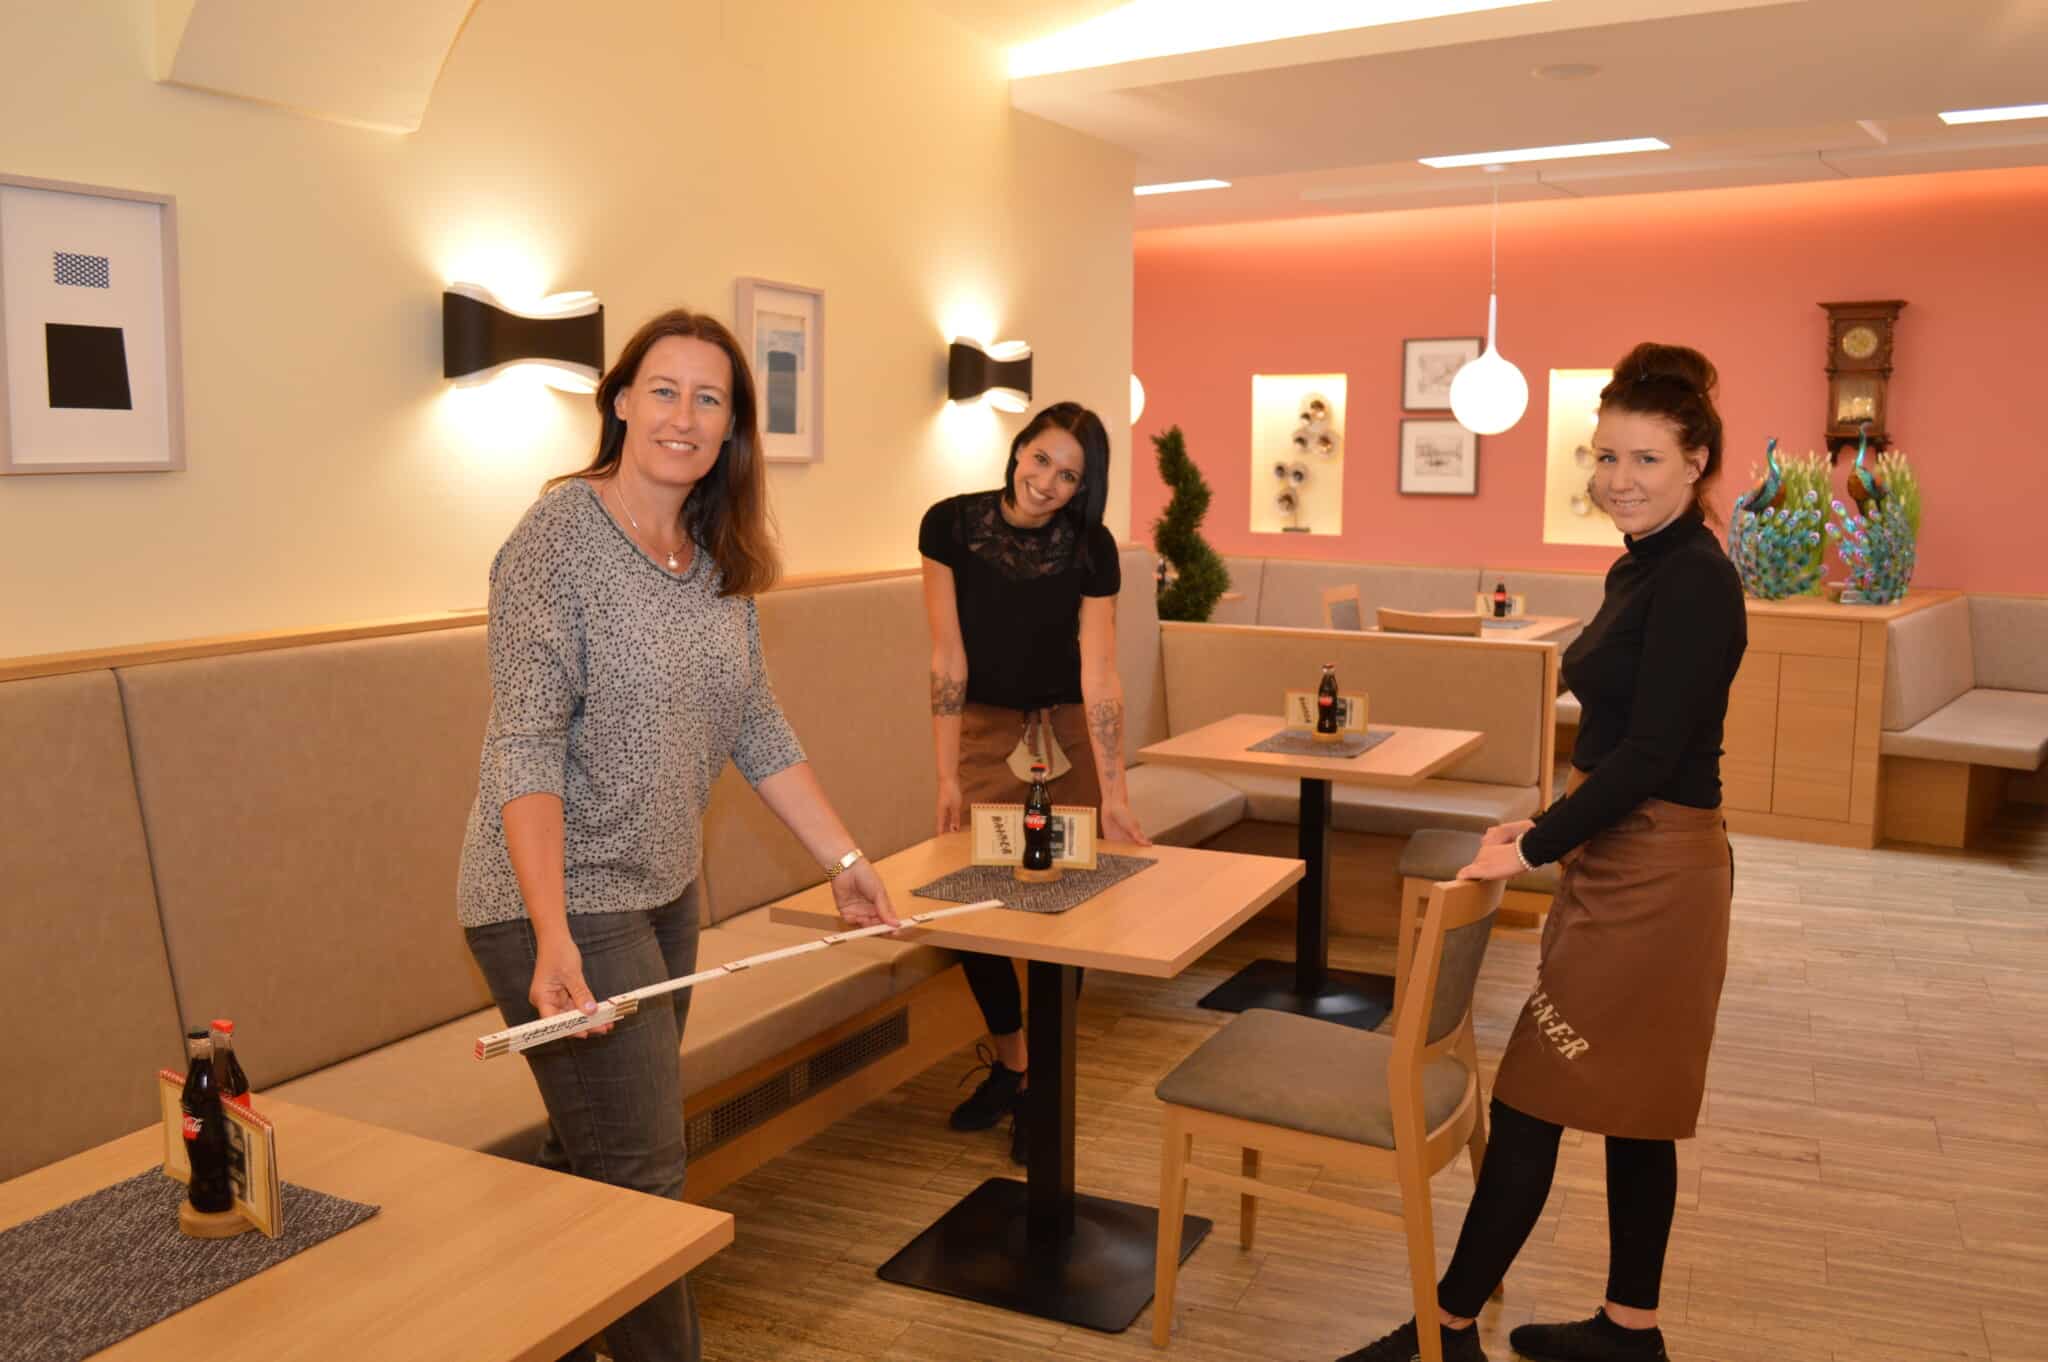 Café-Konditorei Rainer-Chefin Katharina Rainer-Valtiner mit ihren Mitarbeiterinnen beim Ausmessen der Tisch-Abstandsregeln. Am Freitag öffnen rund 100 Gastro-Betriebe in der Villacher Innenstadt.